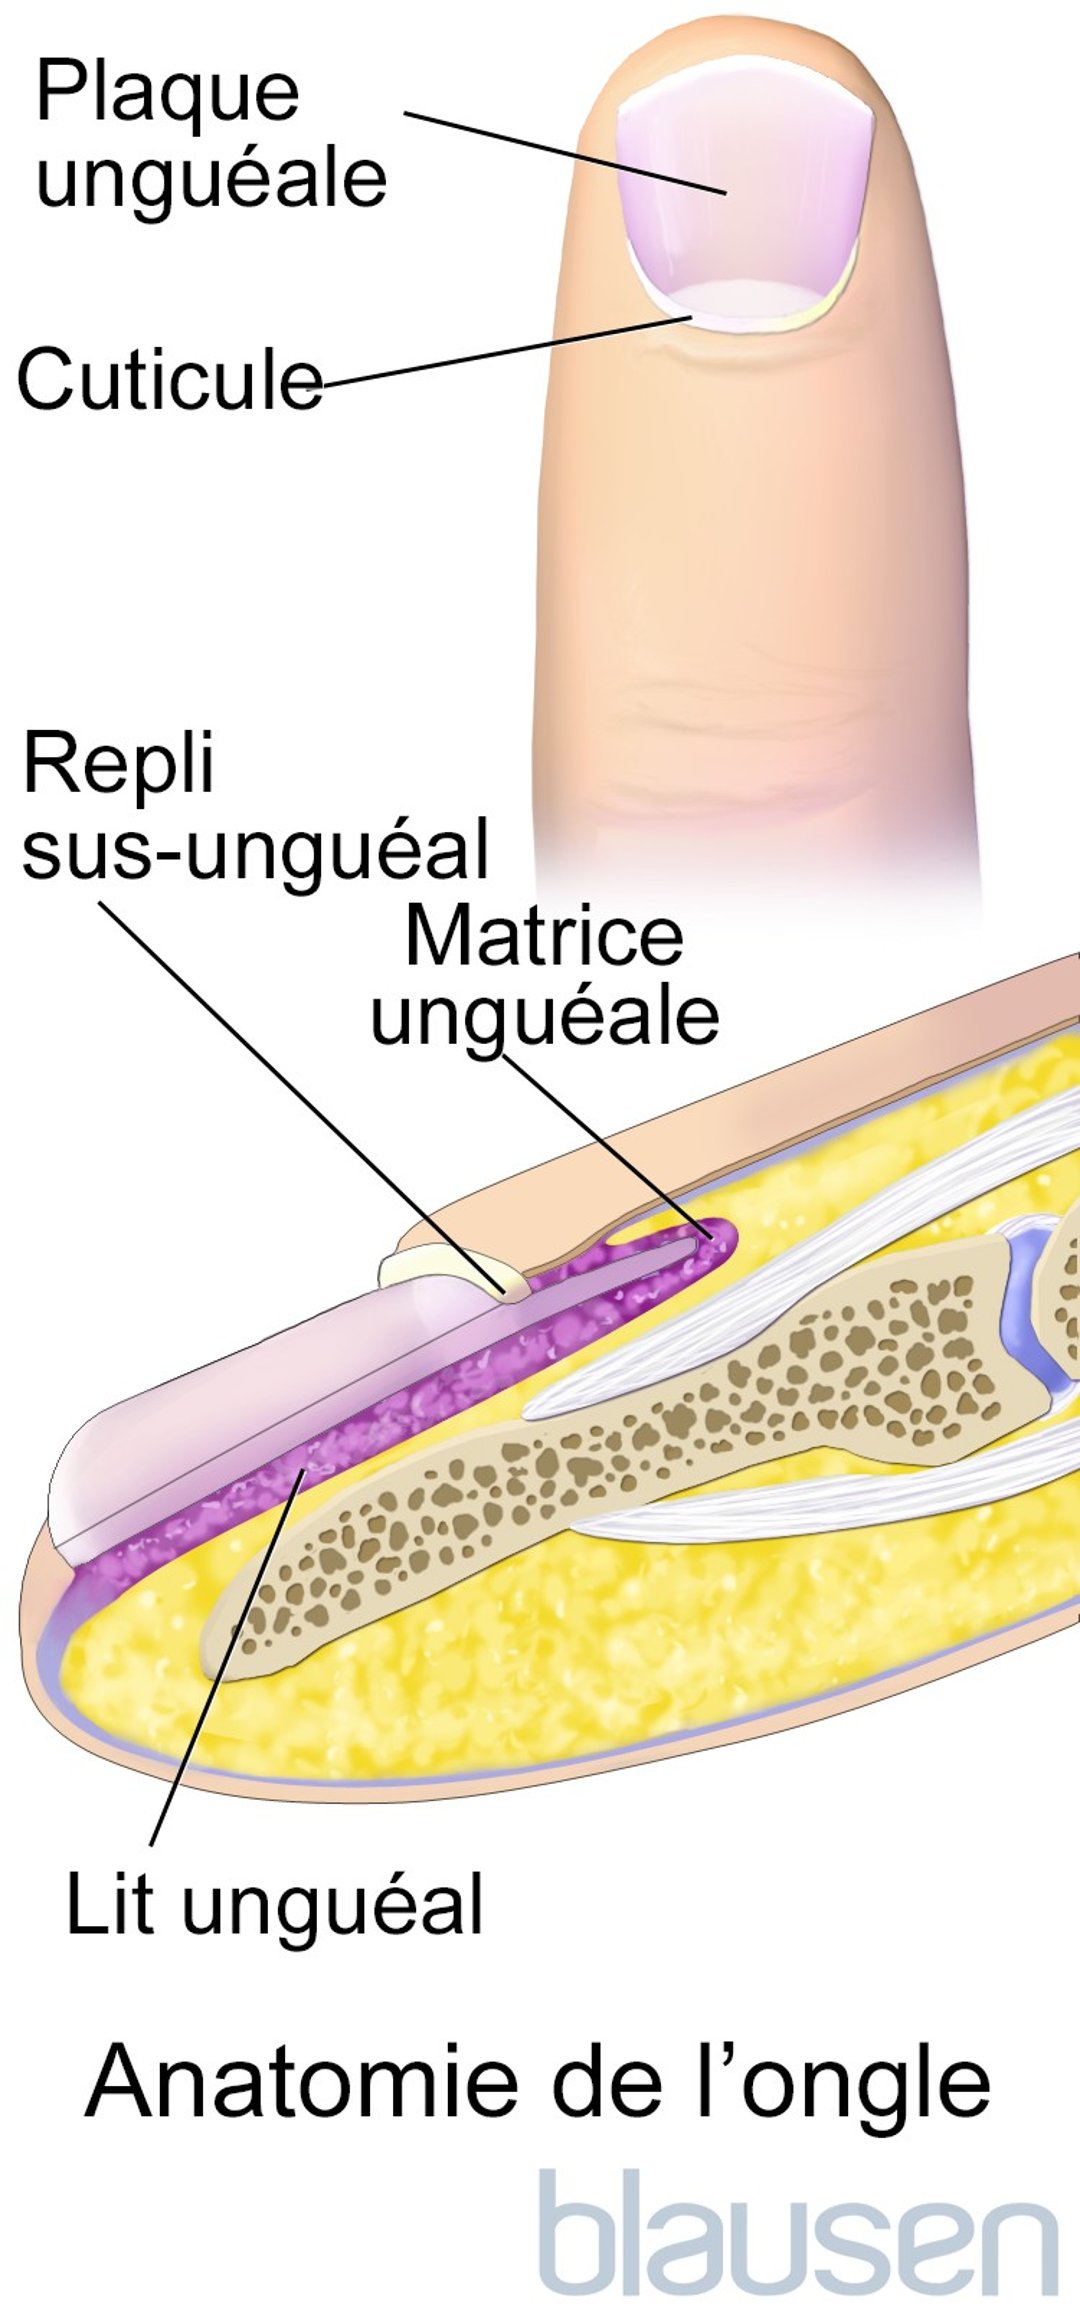 Anatomie de l’ongle des doigts